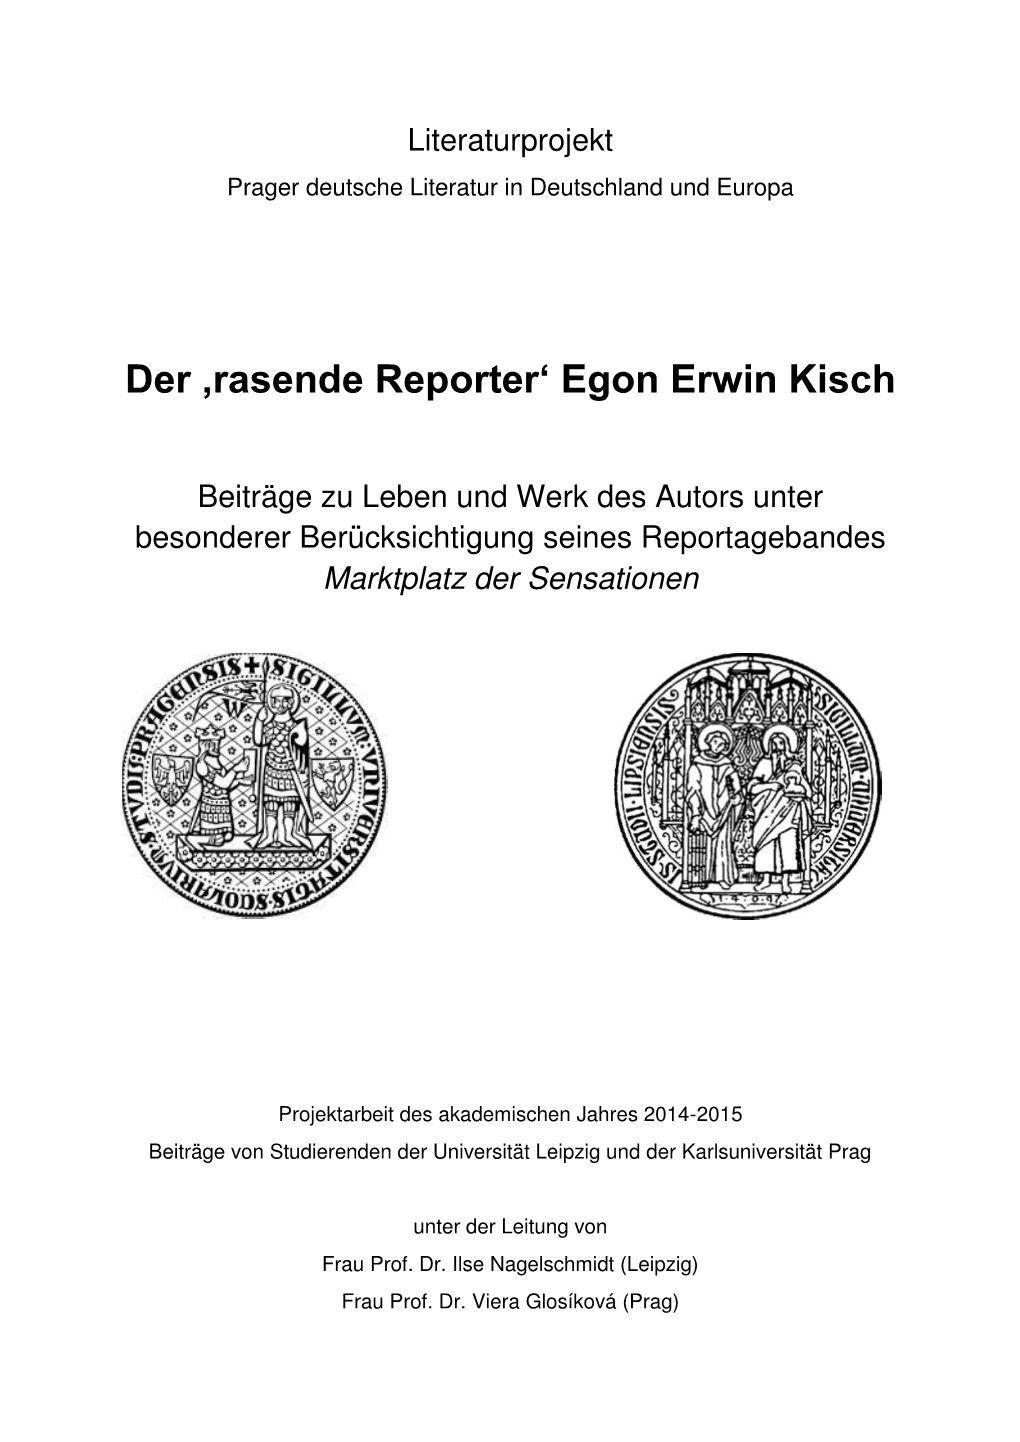 Der ‚Rasende Reporter' Egon Erwin Kisch